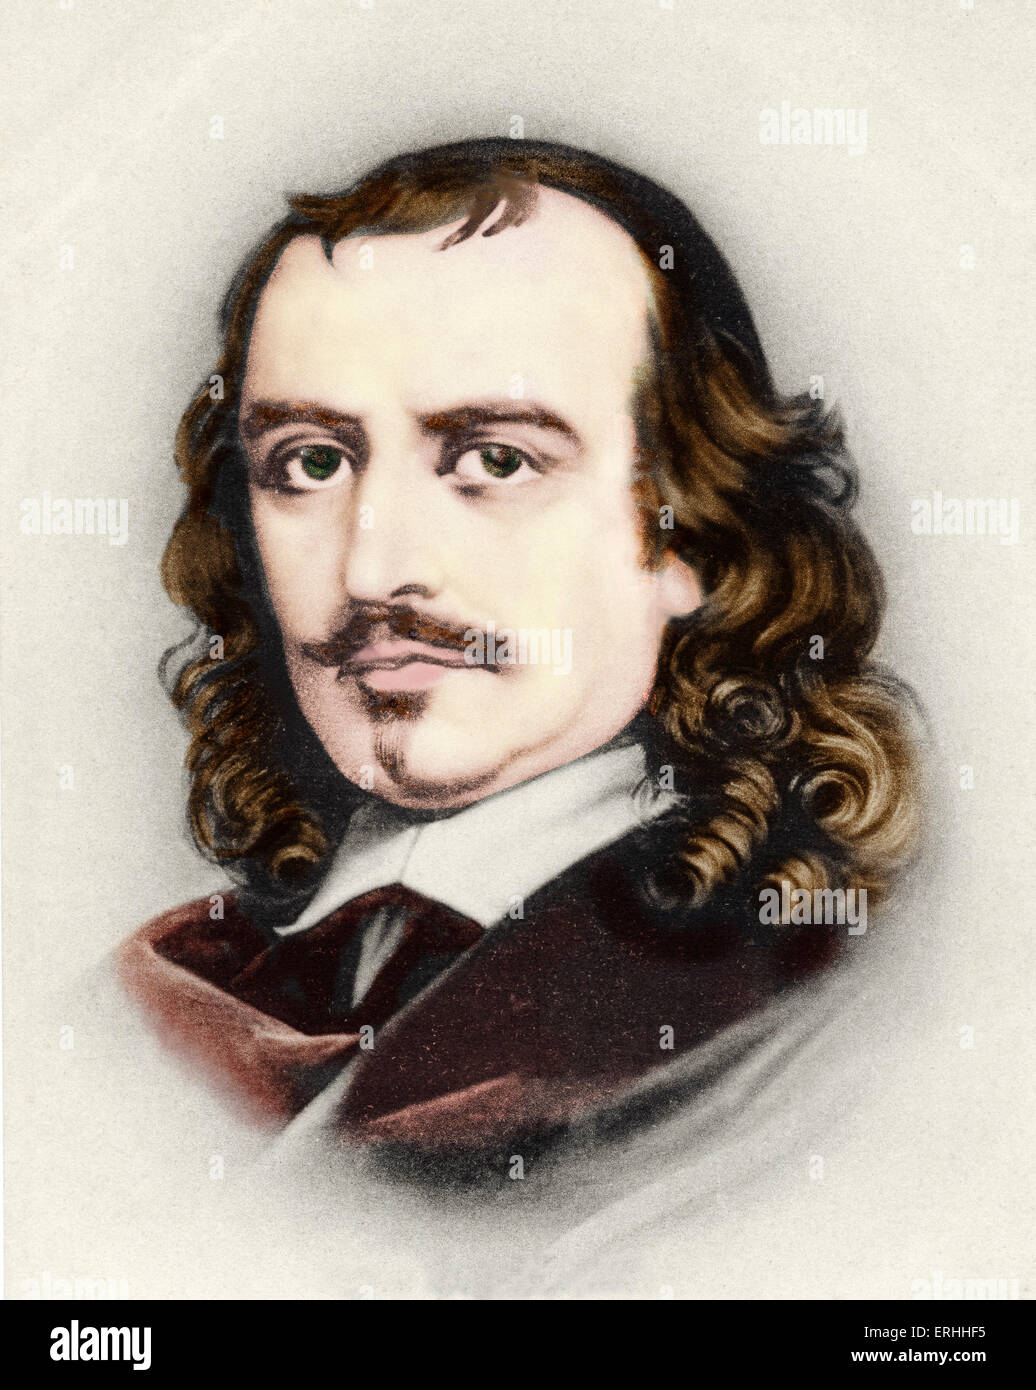 Pierre Corneille, Portrait. Französischer Dramatiker & Dramatiker. 6. Juni 1606 - 1. Oktober 1684. Farbausführung Bild. Stockfoto